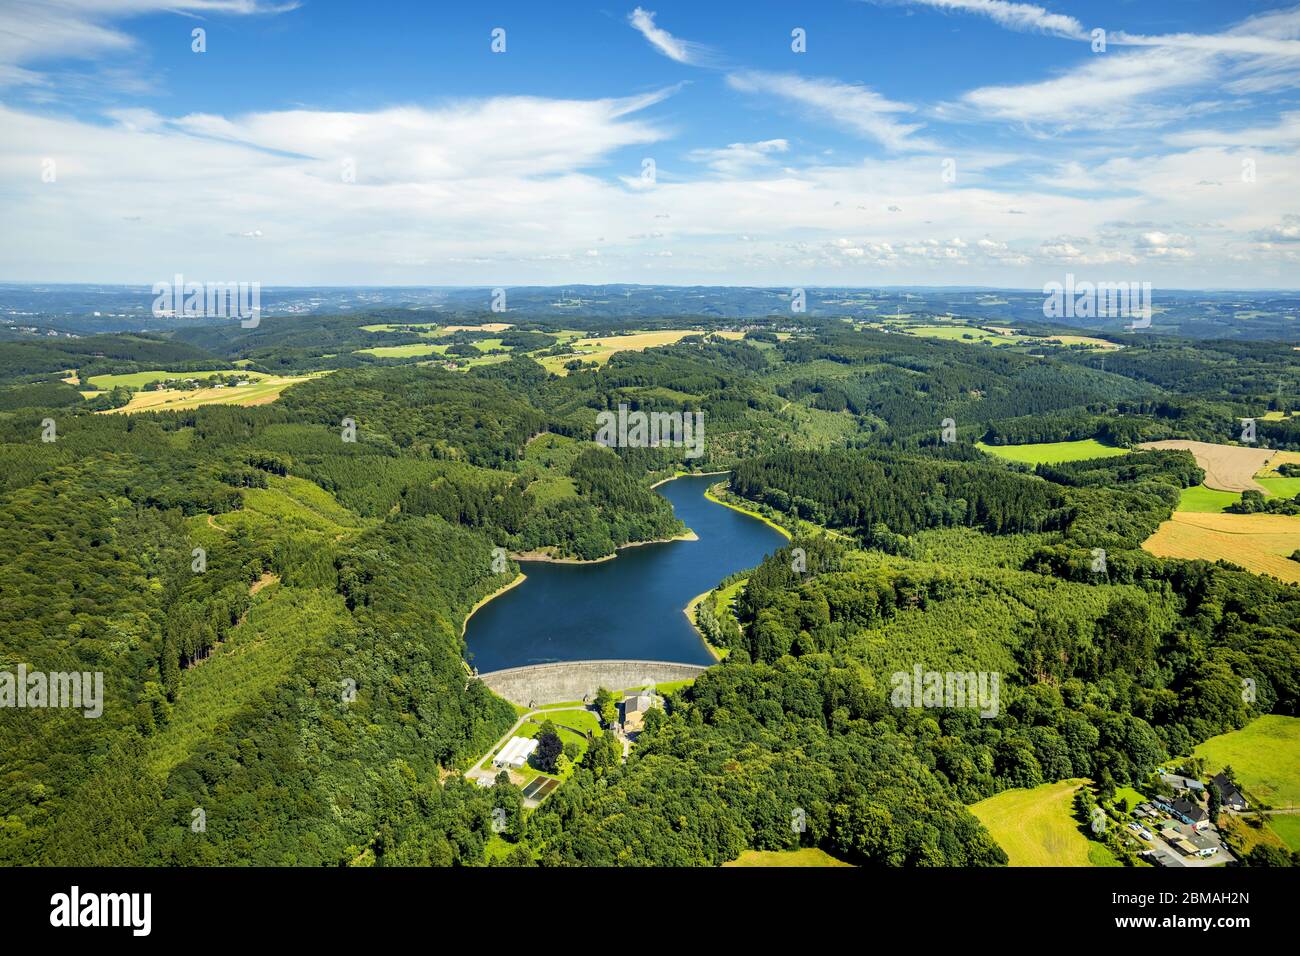 , storage lake Haspertalsperre in Ennepetal, 31.07.2017, aerial view, Germany, North Rhine-Westphalia, Ruhr Area, Ennepetal Stock Photo